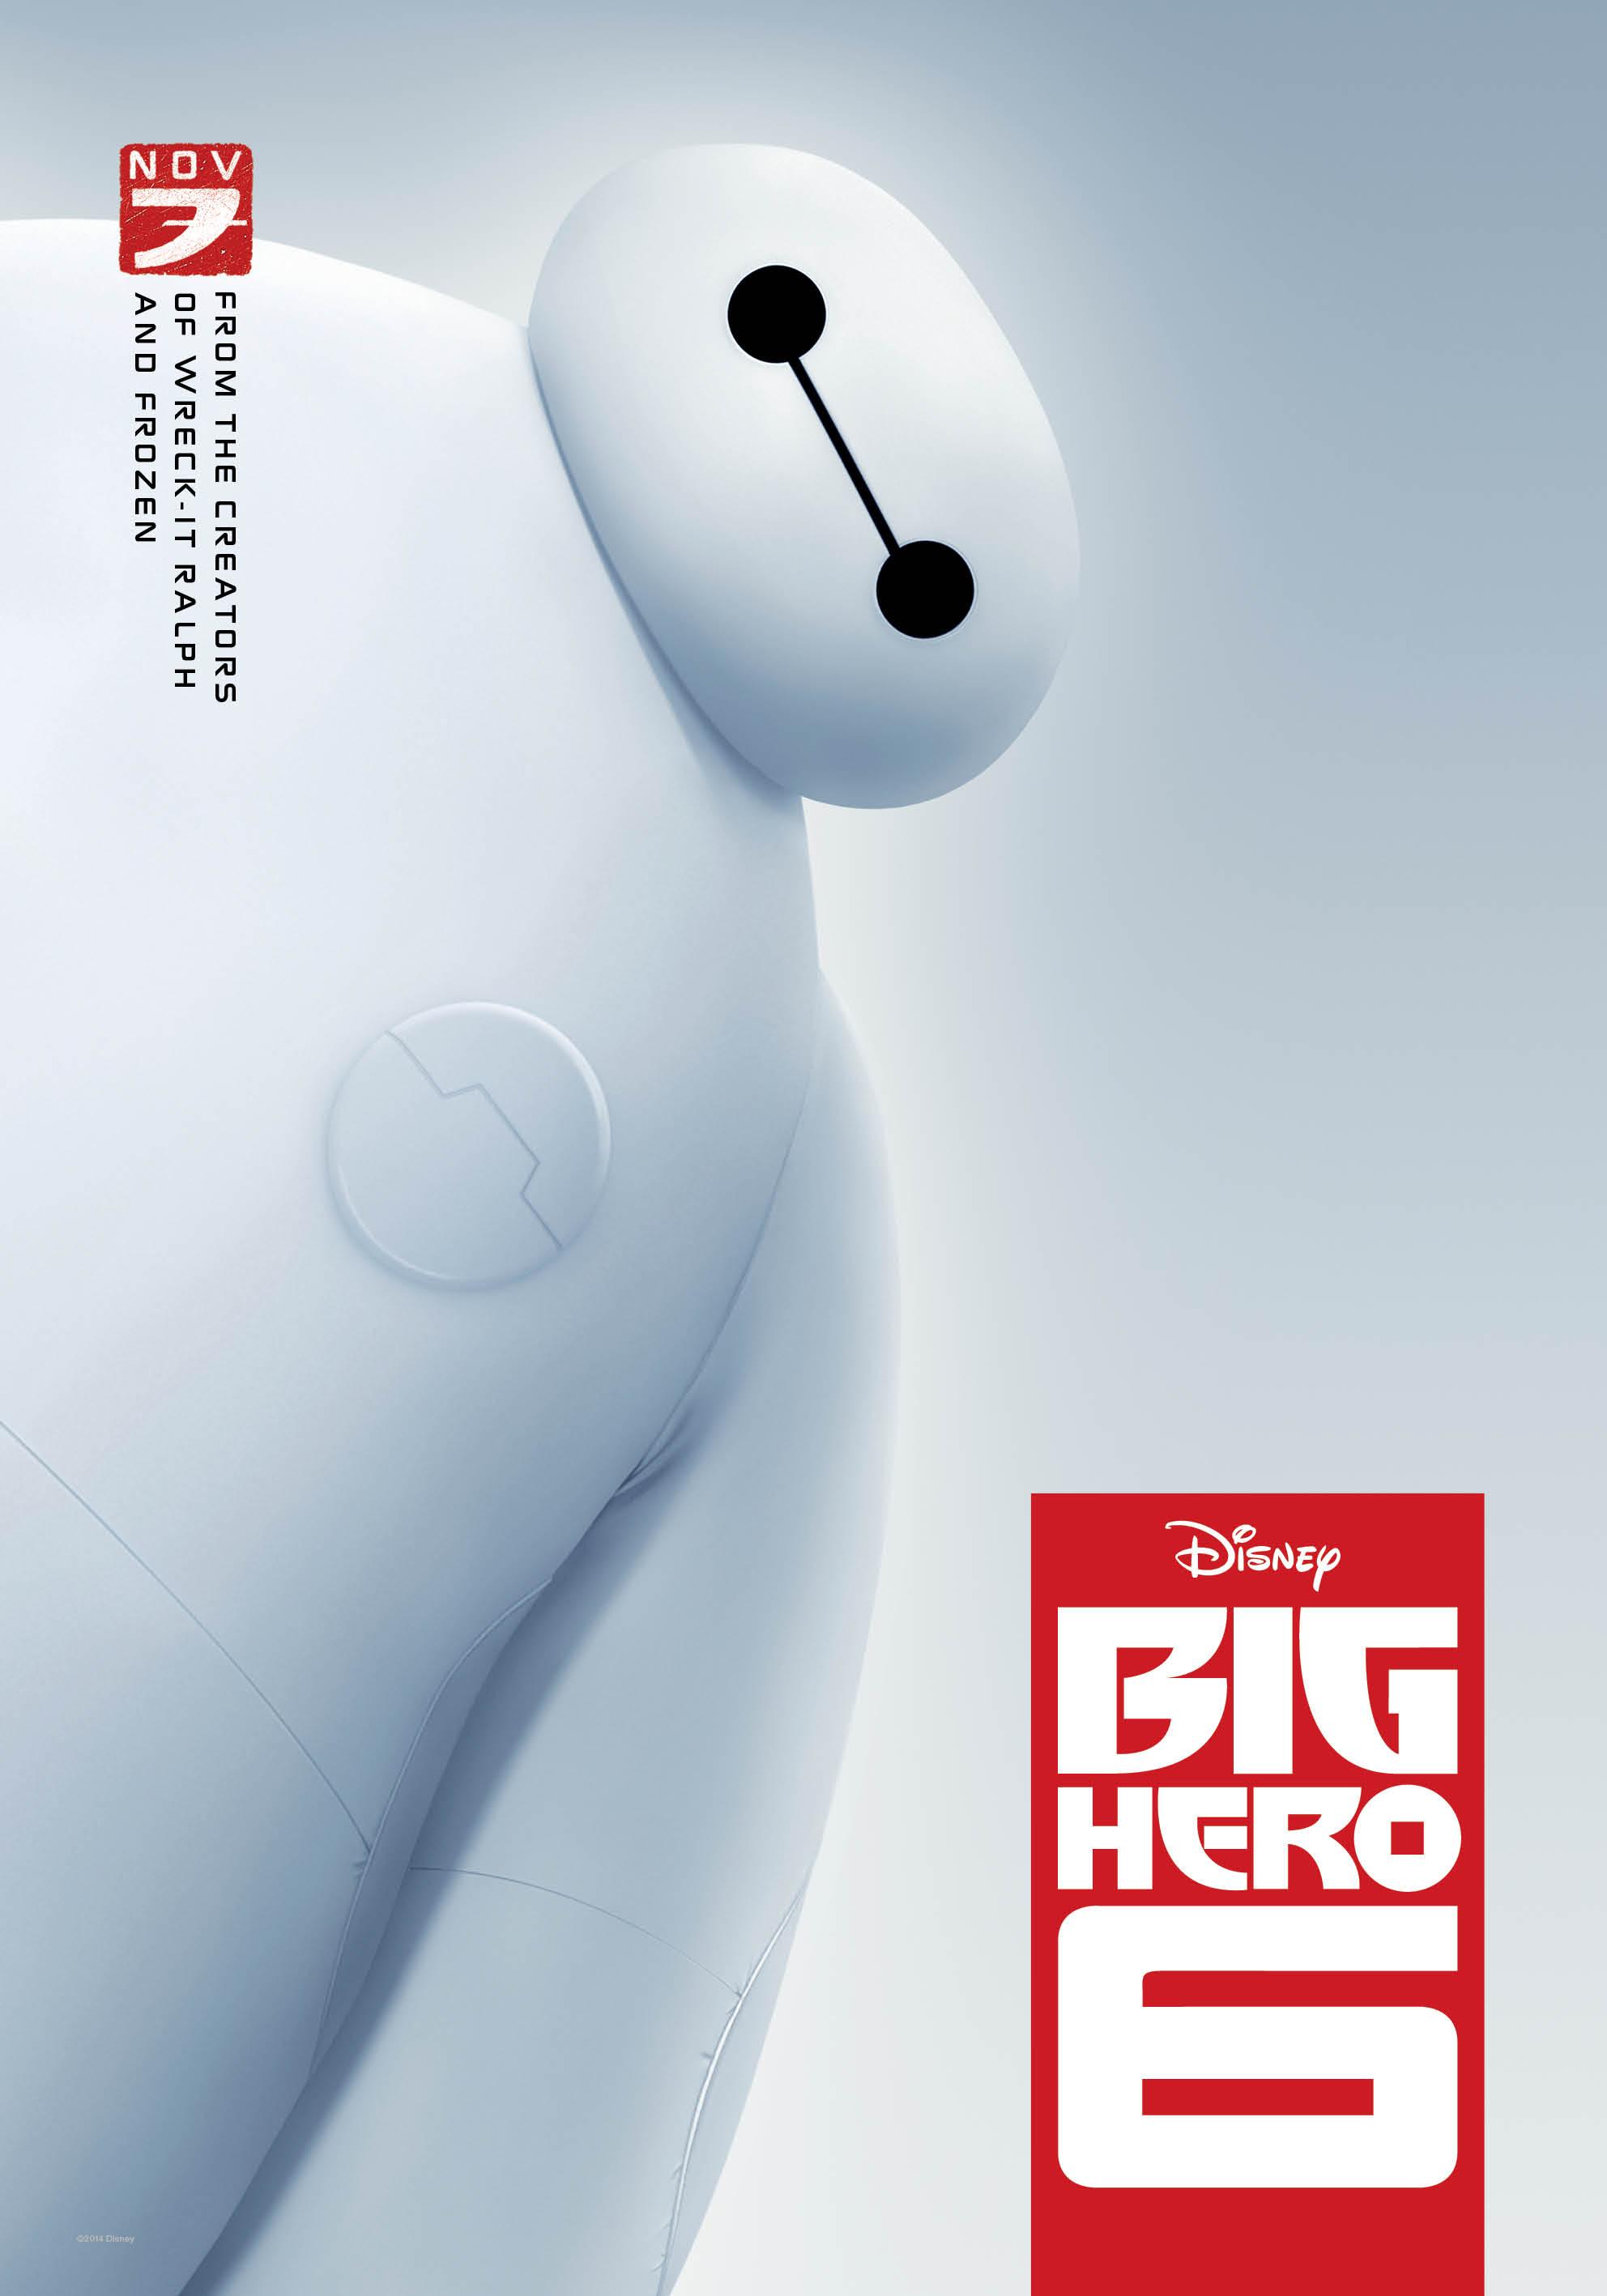 big-hero-6-poster-baymax-hi-res